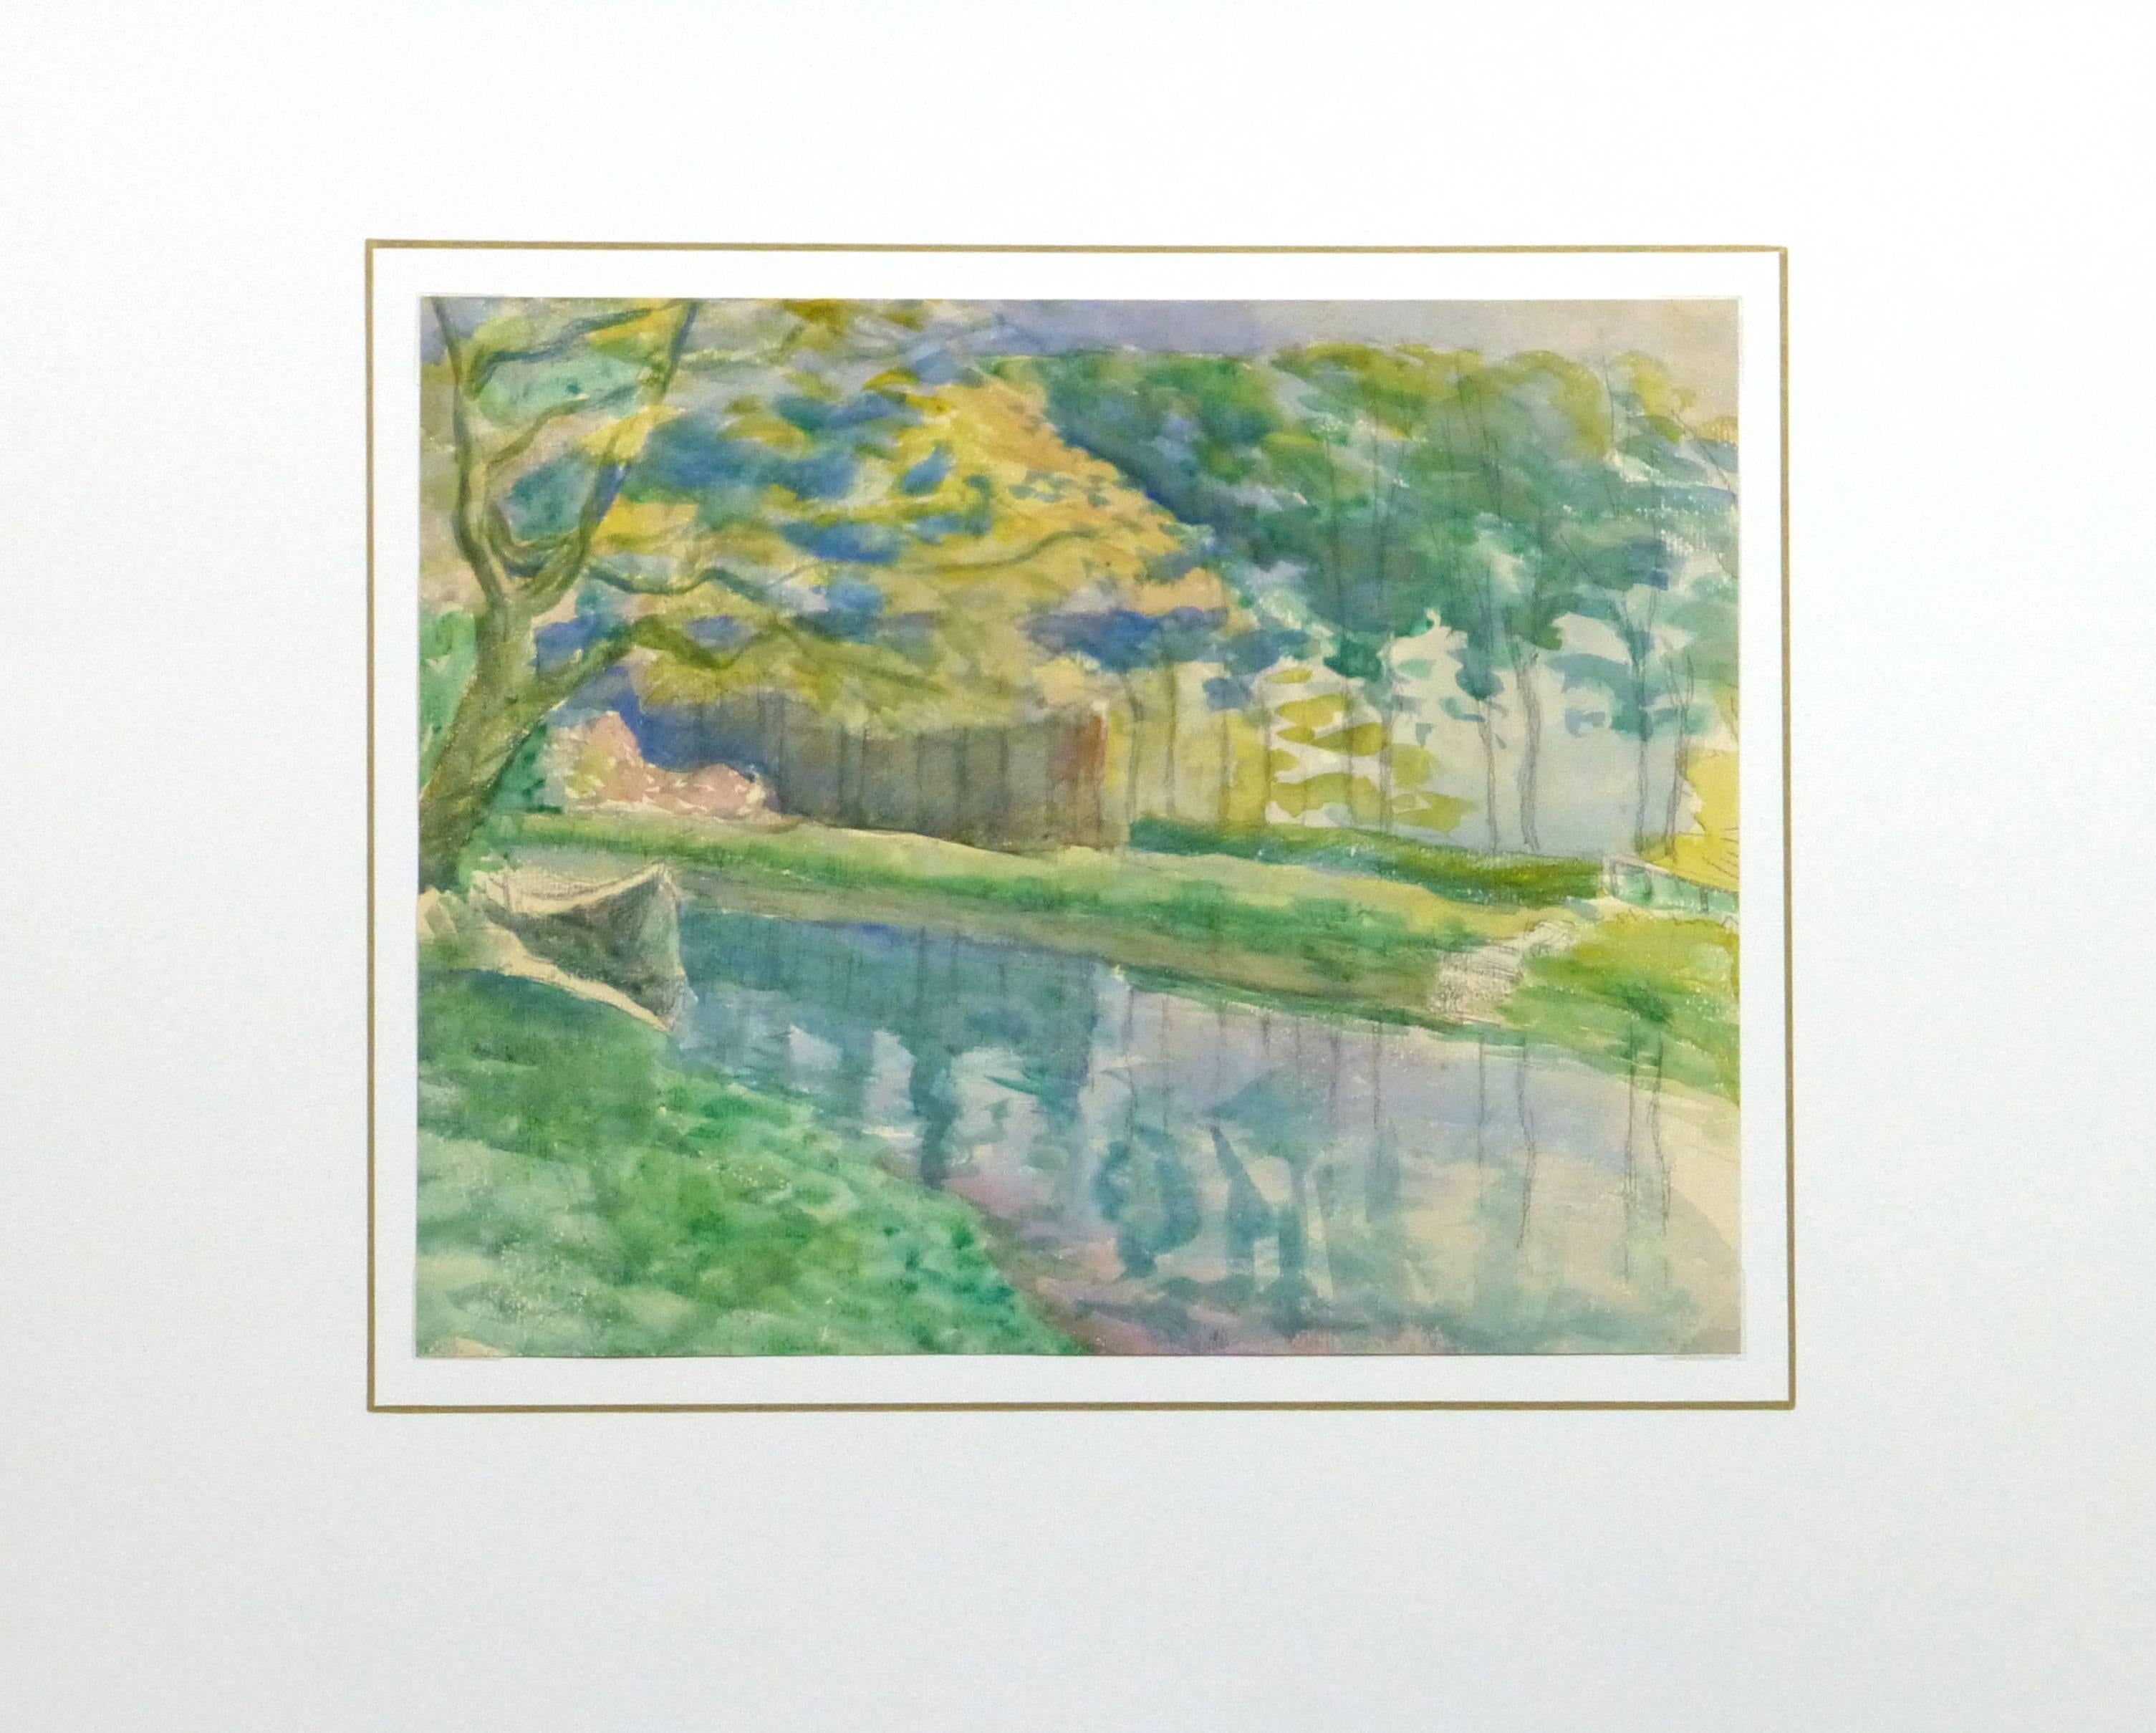 Herrliches französisches Aquarell eines glasklaren Flusses mit lebhaft grünem Gras und Bäumen in Herbstfarben aus dem Jahr 1911.

Einzigartiges Originalkunstwerk auf Papier, das auf einer weißen Matte mit Goldrand präsentiert wird. Die Matte passt